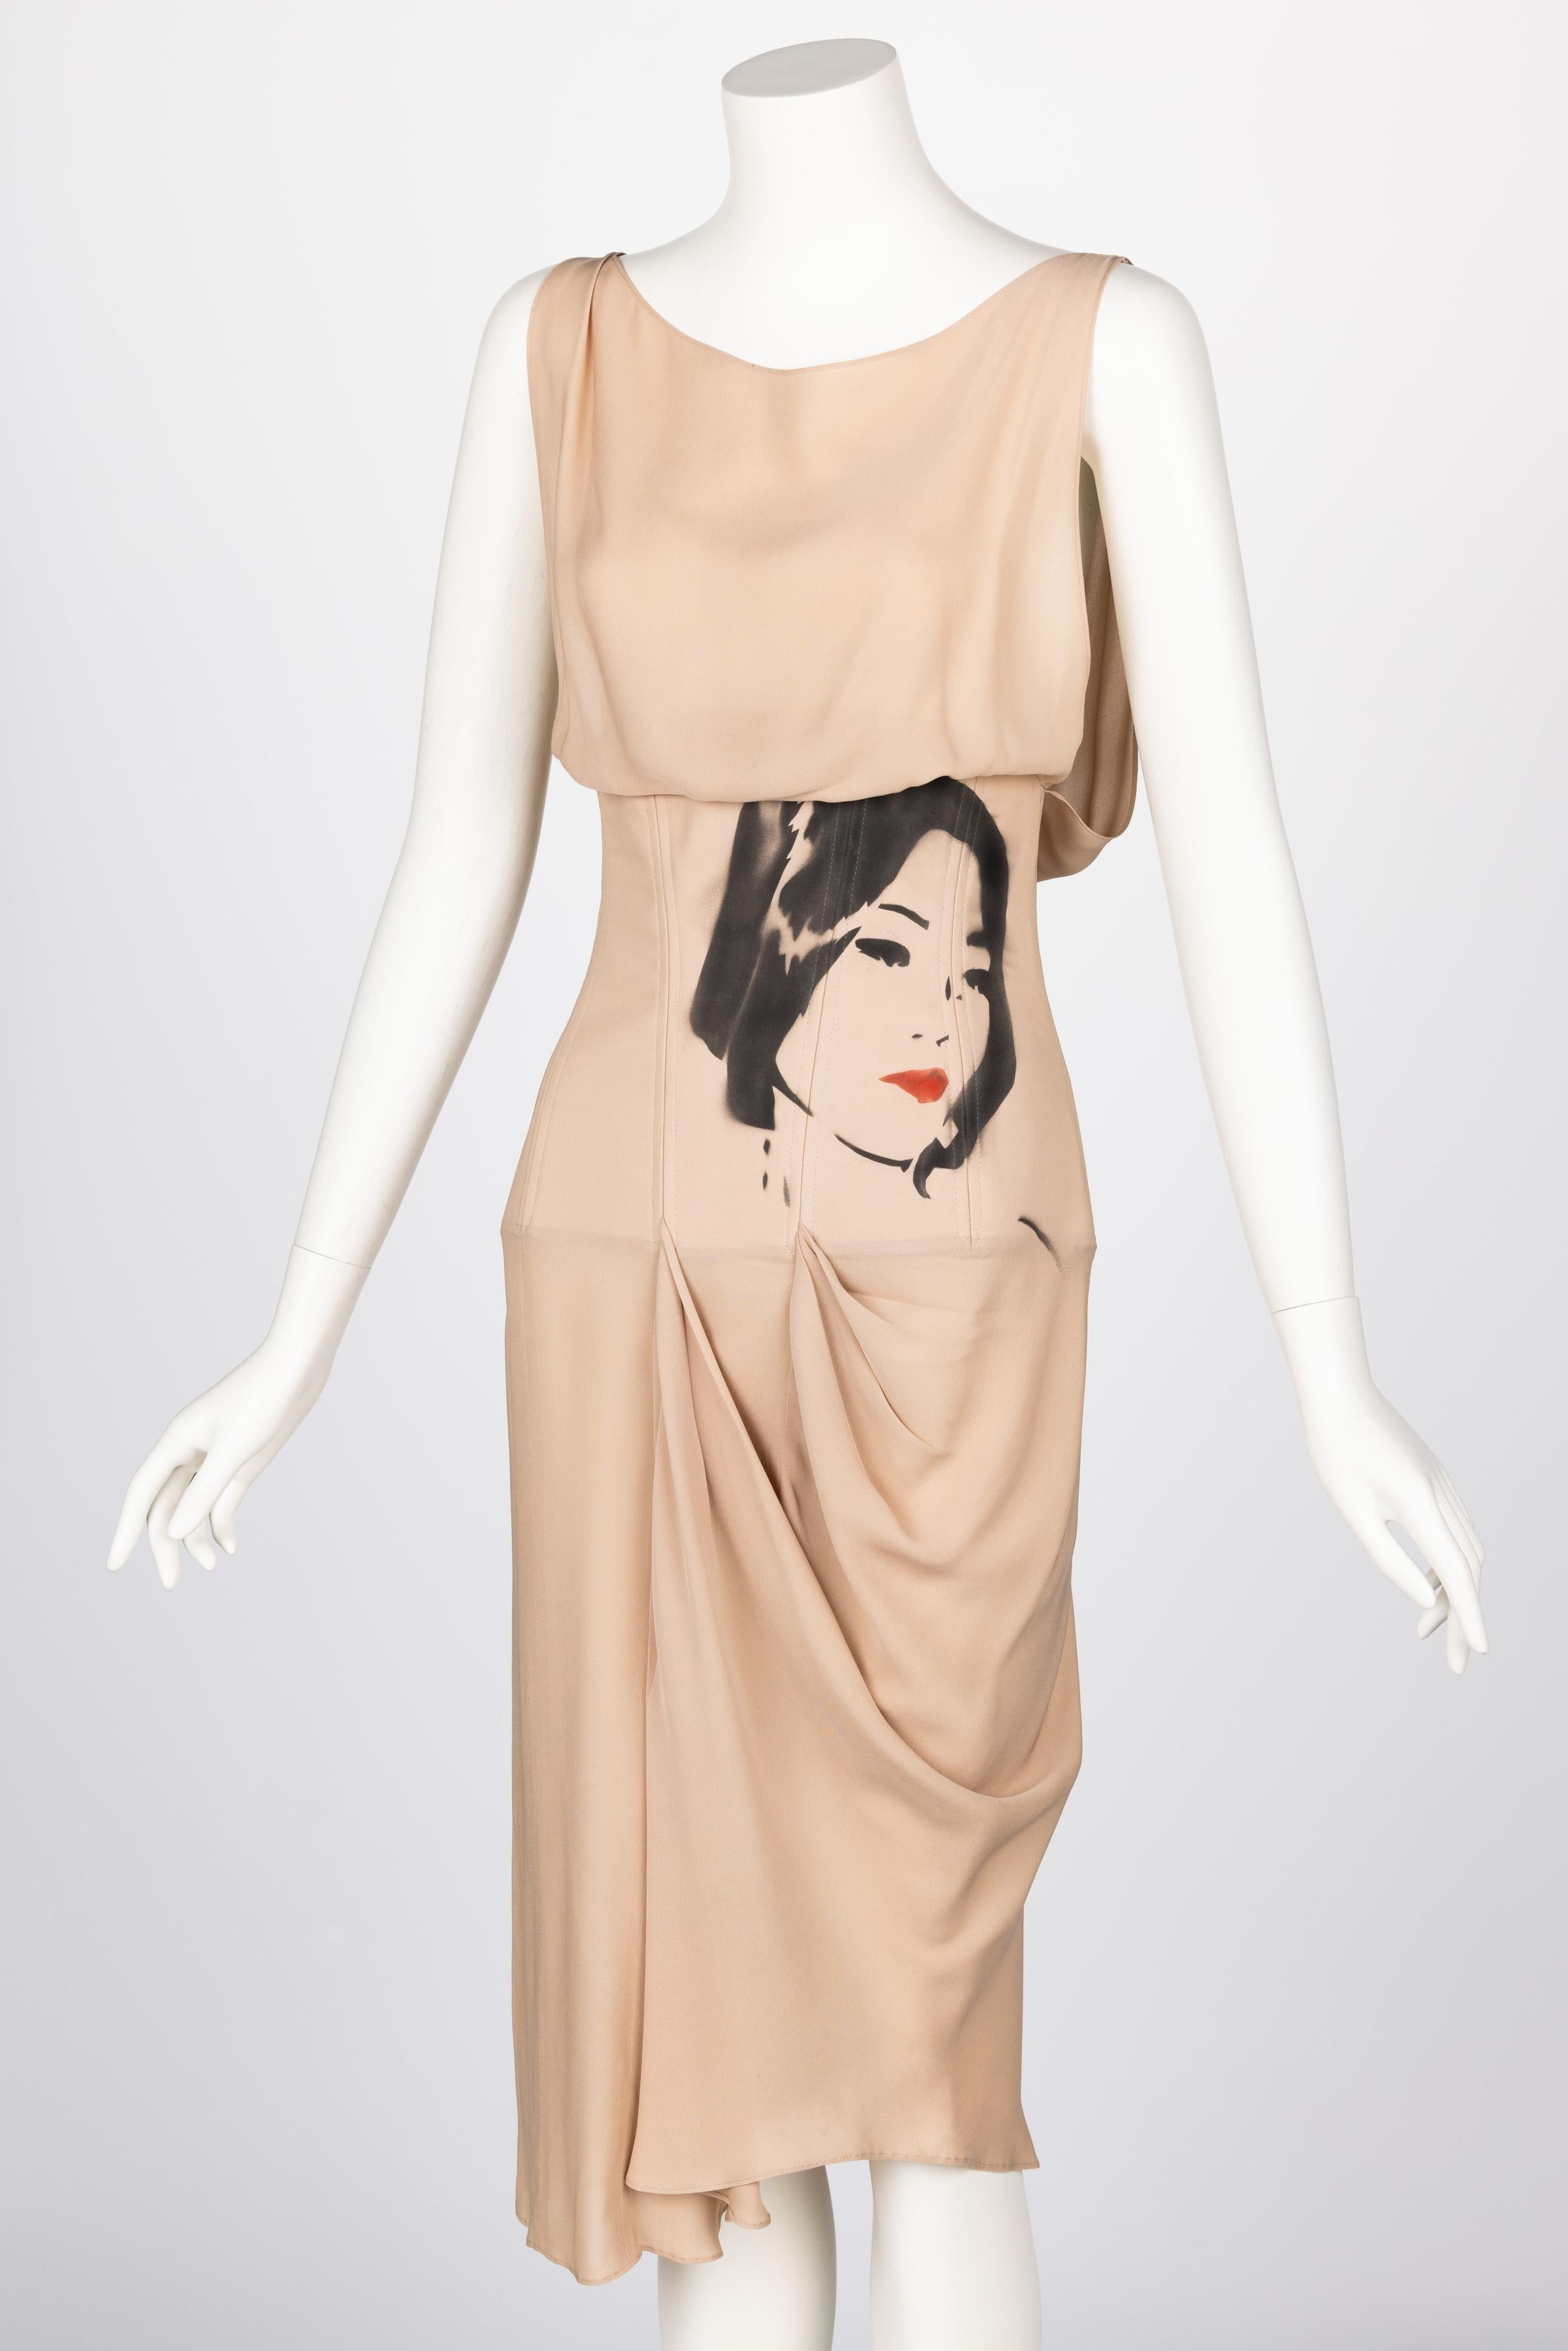 Chloé Stella McCartney F/W 2001 Draped Silk Face Corset Dress In Good Condition For Sale In Boca Raton, FL